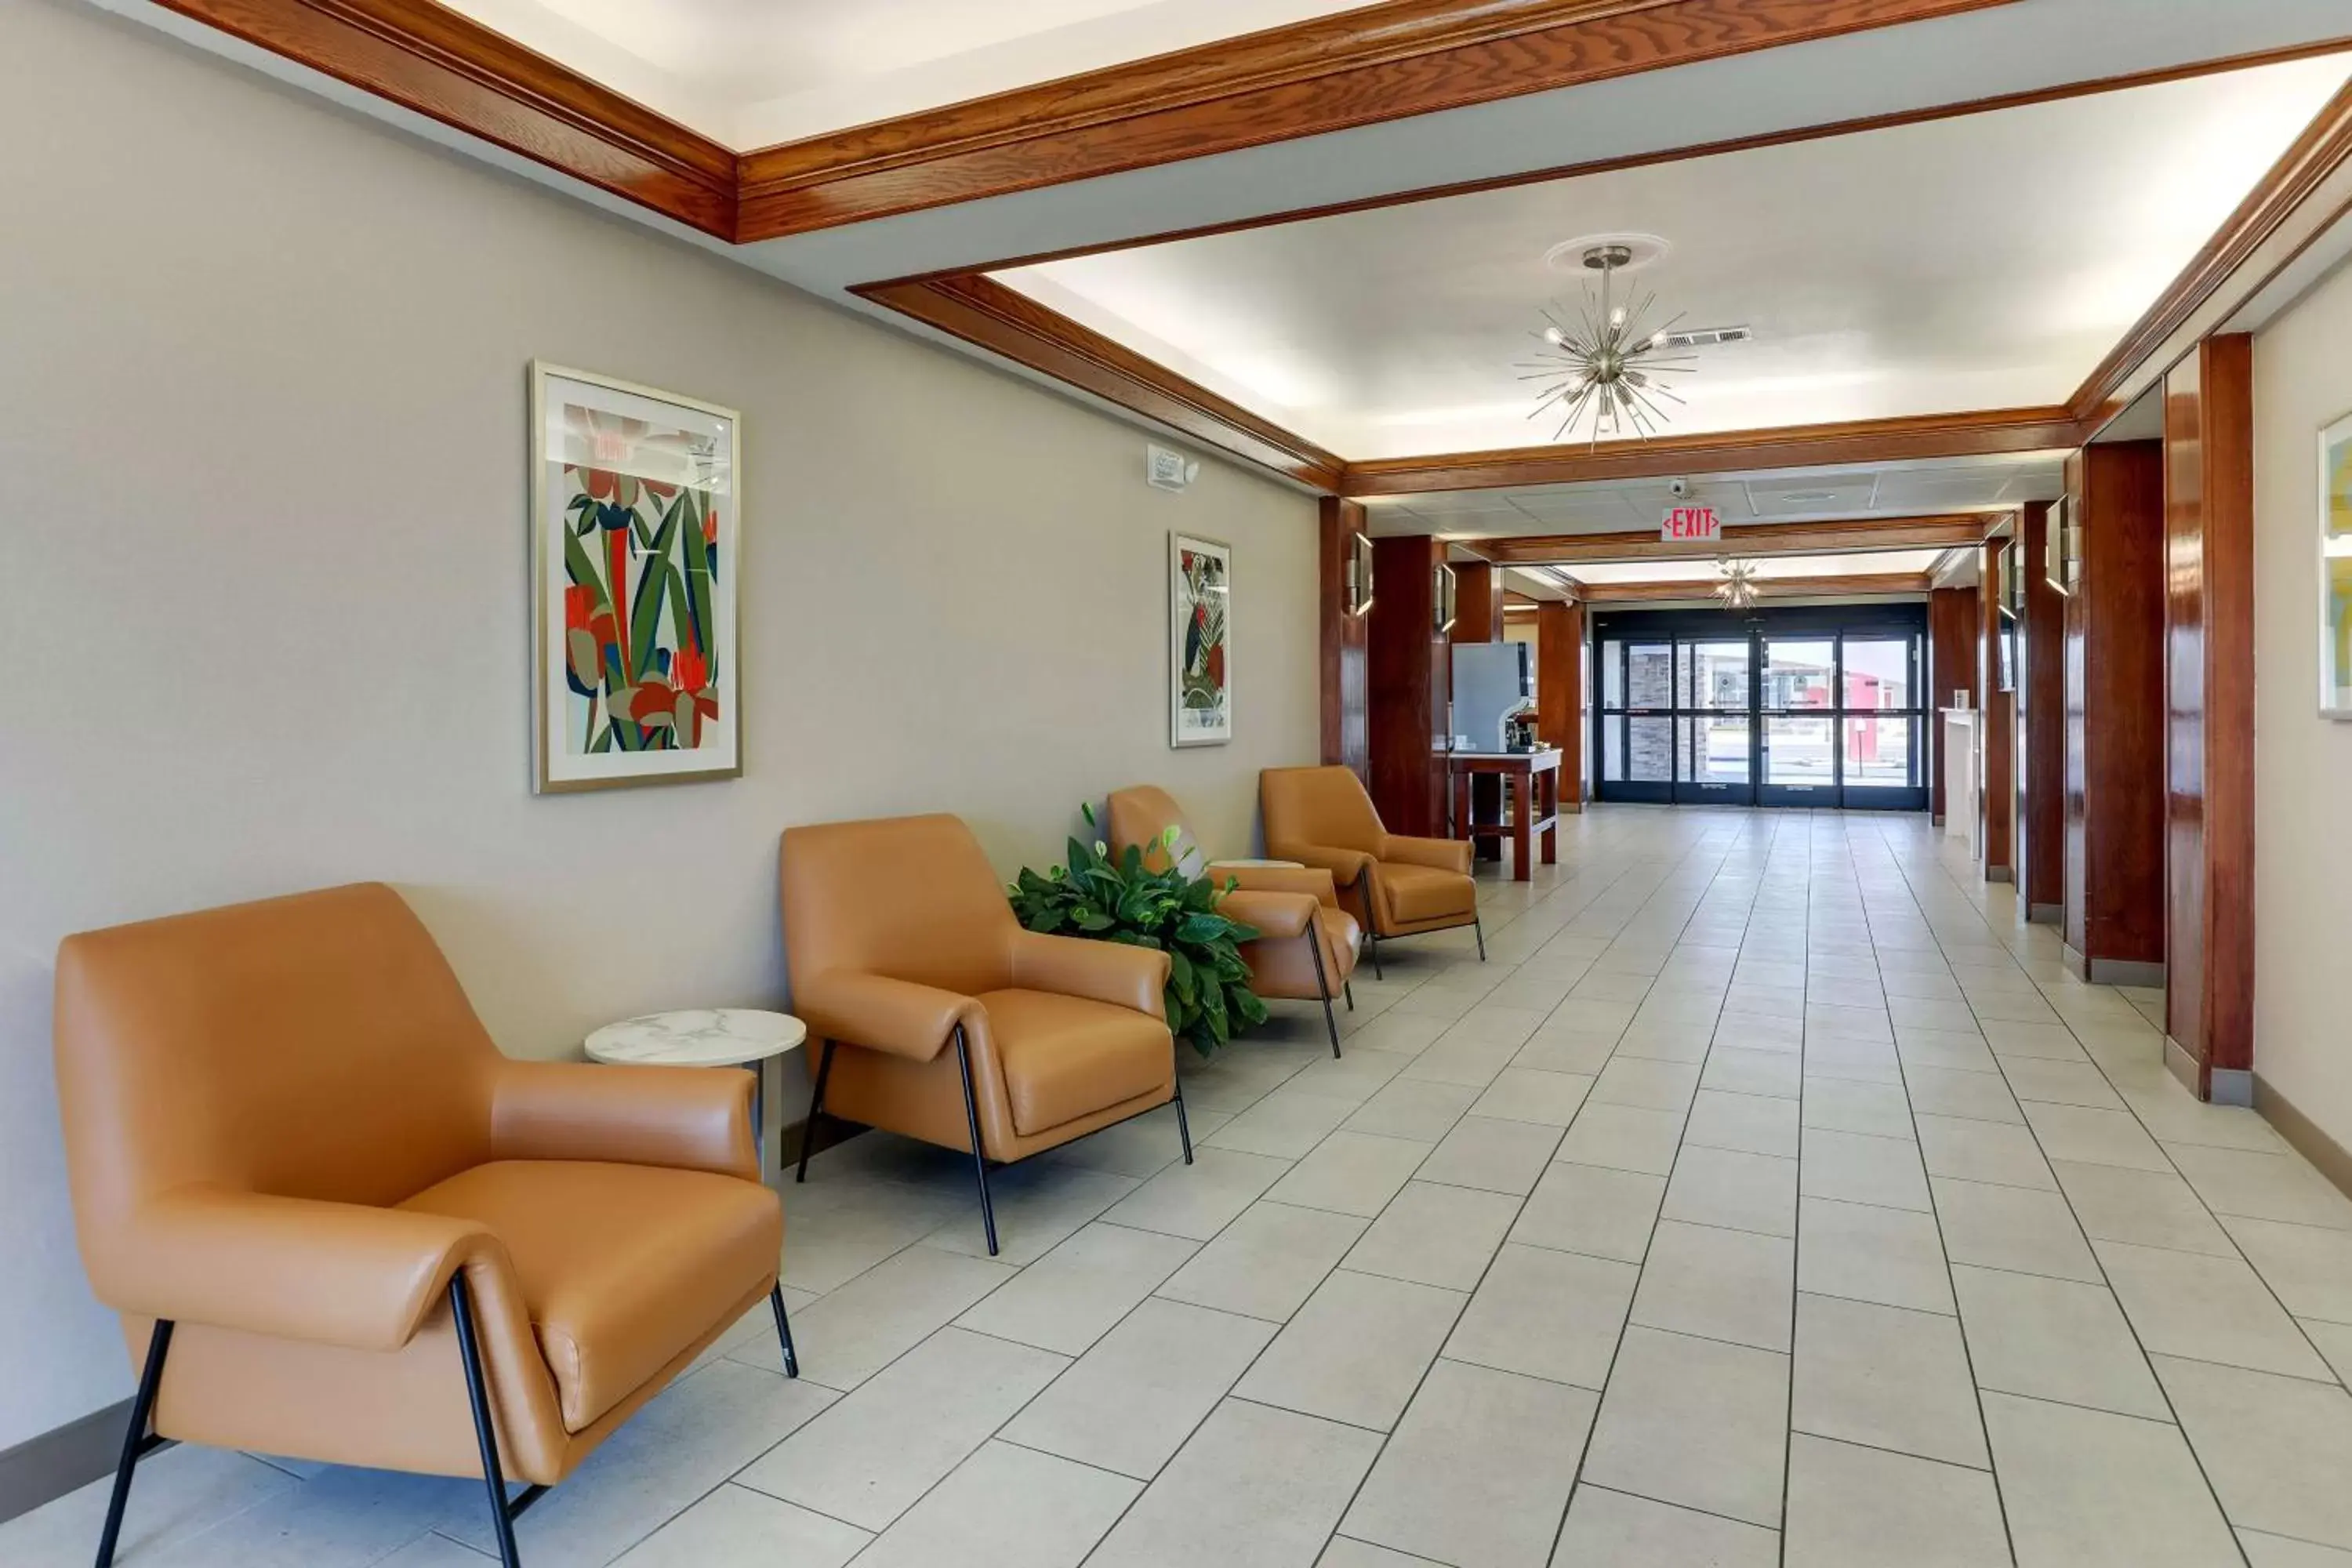 Lobby or reception, Lobby/Reception in Best Western Plus Riata Hotel